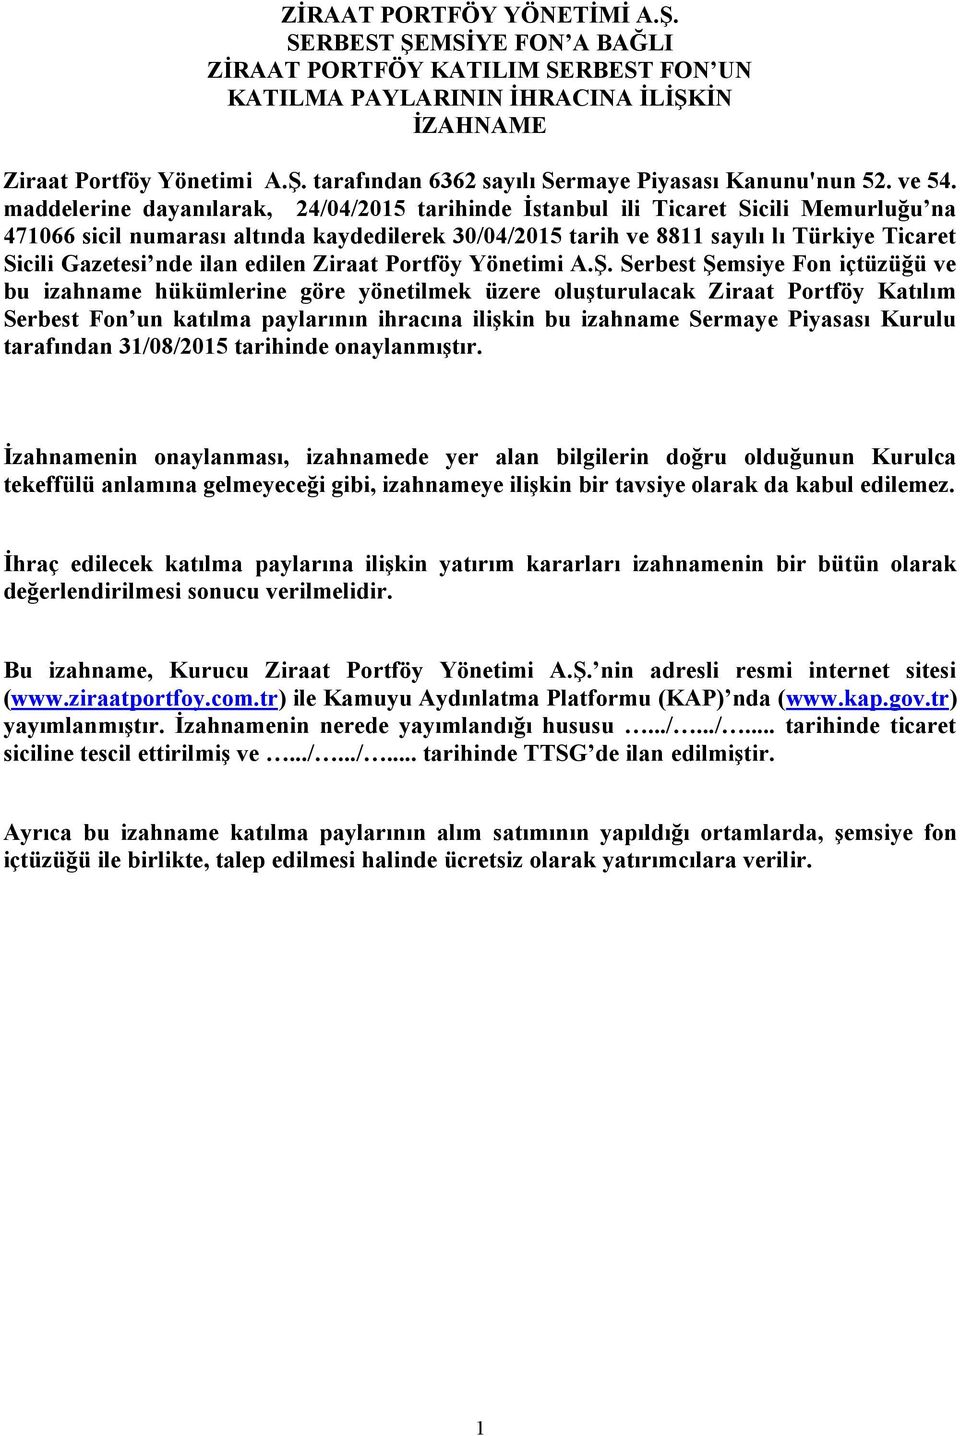 maddelerine dayanılarak, 24/04/2015 tarihinde İstanbul ili Ticaret Sicili Memurluğu na 471066 sicil numarası altında kaydedilerek 30/04/2015 tarih ve 8811 sayılı lı Türkiye Ticaret Sicili Gazetesi